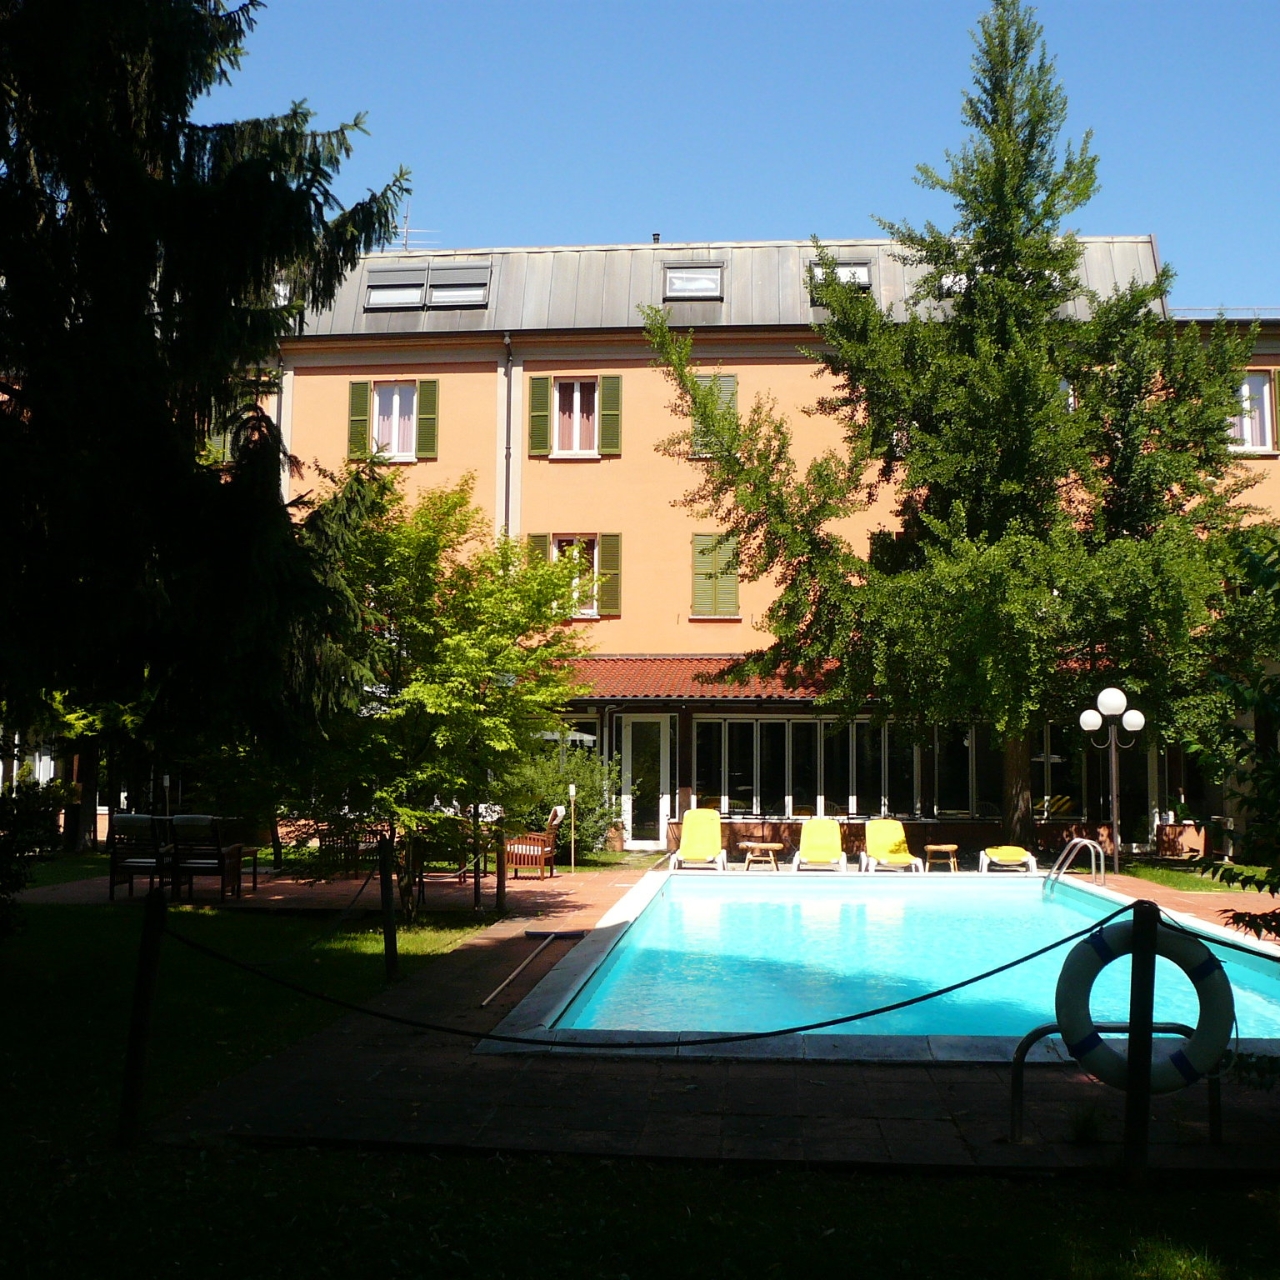 Hotel Milano - Salice Terme, Godiasco presso HRS con servizi gratuiti